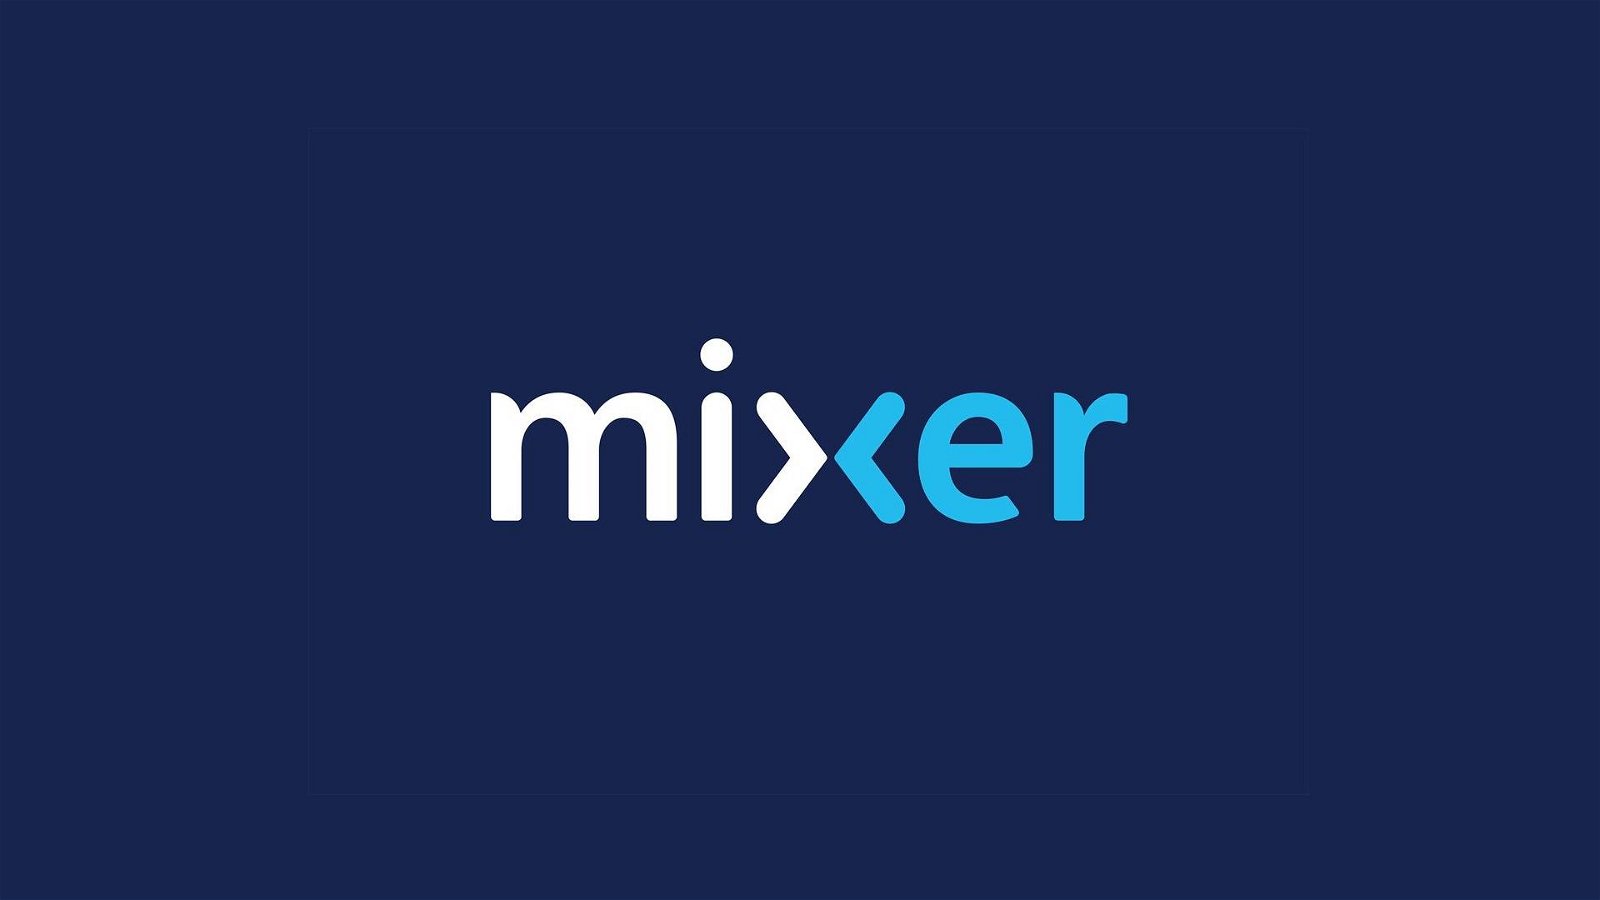 Immagine di Mixer si sta liberando di alcuni contenuti controversi